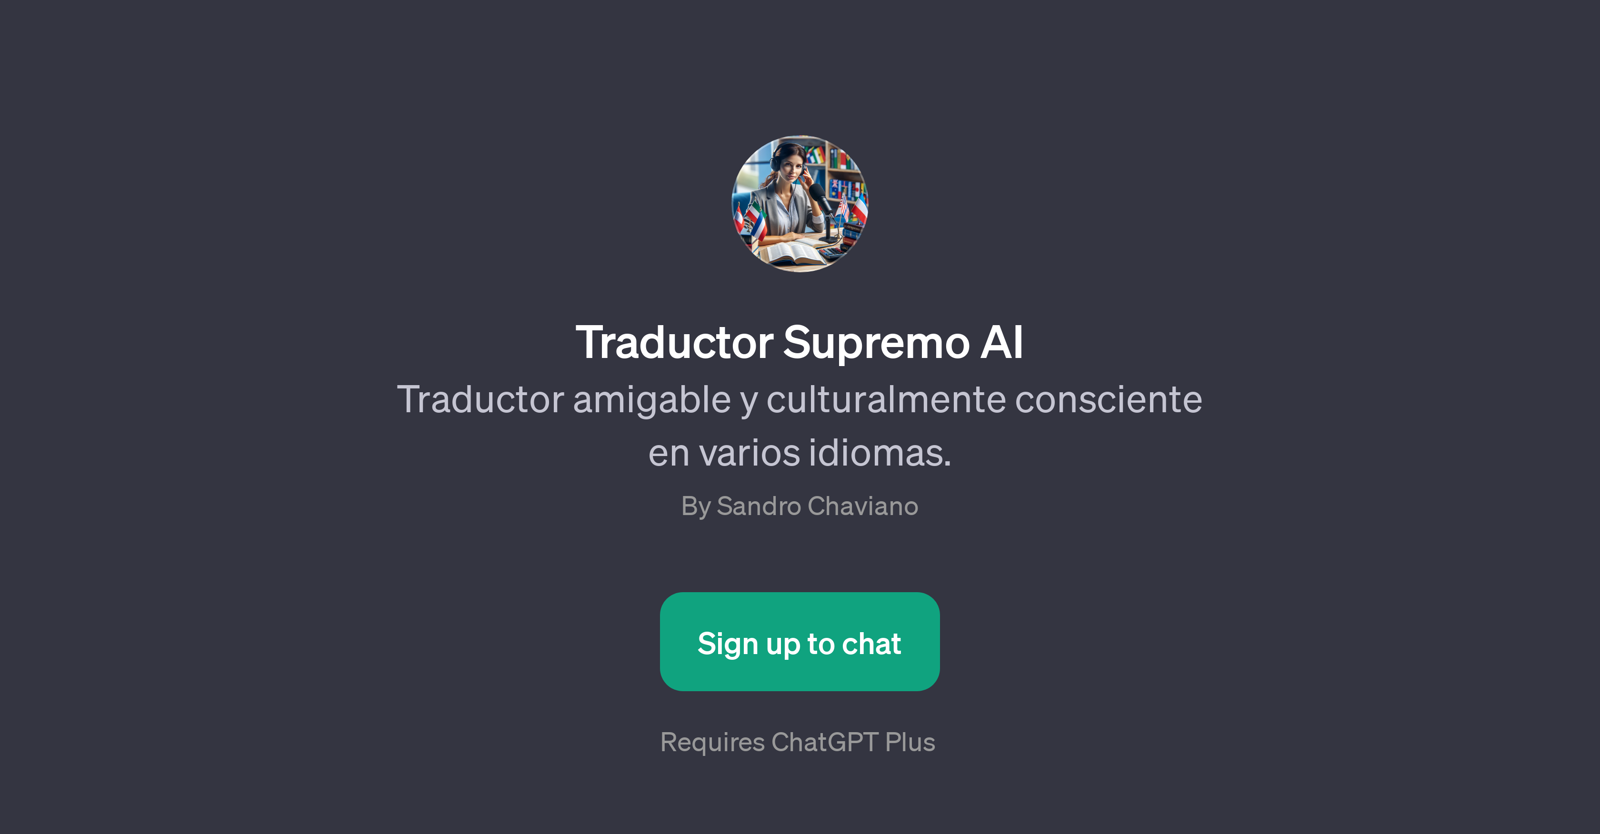 Traductor Supremo AI website